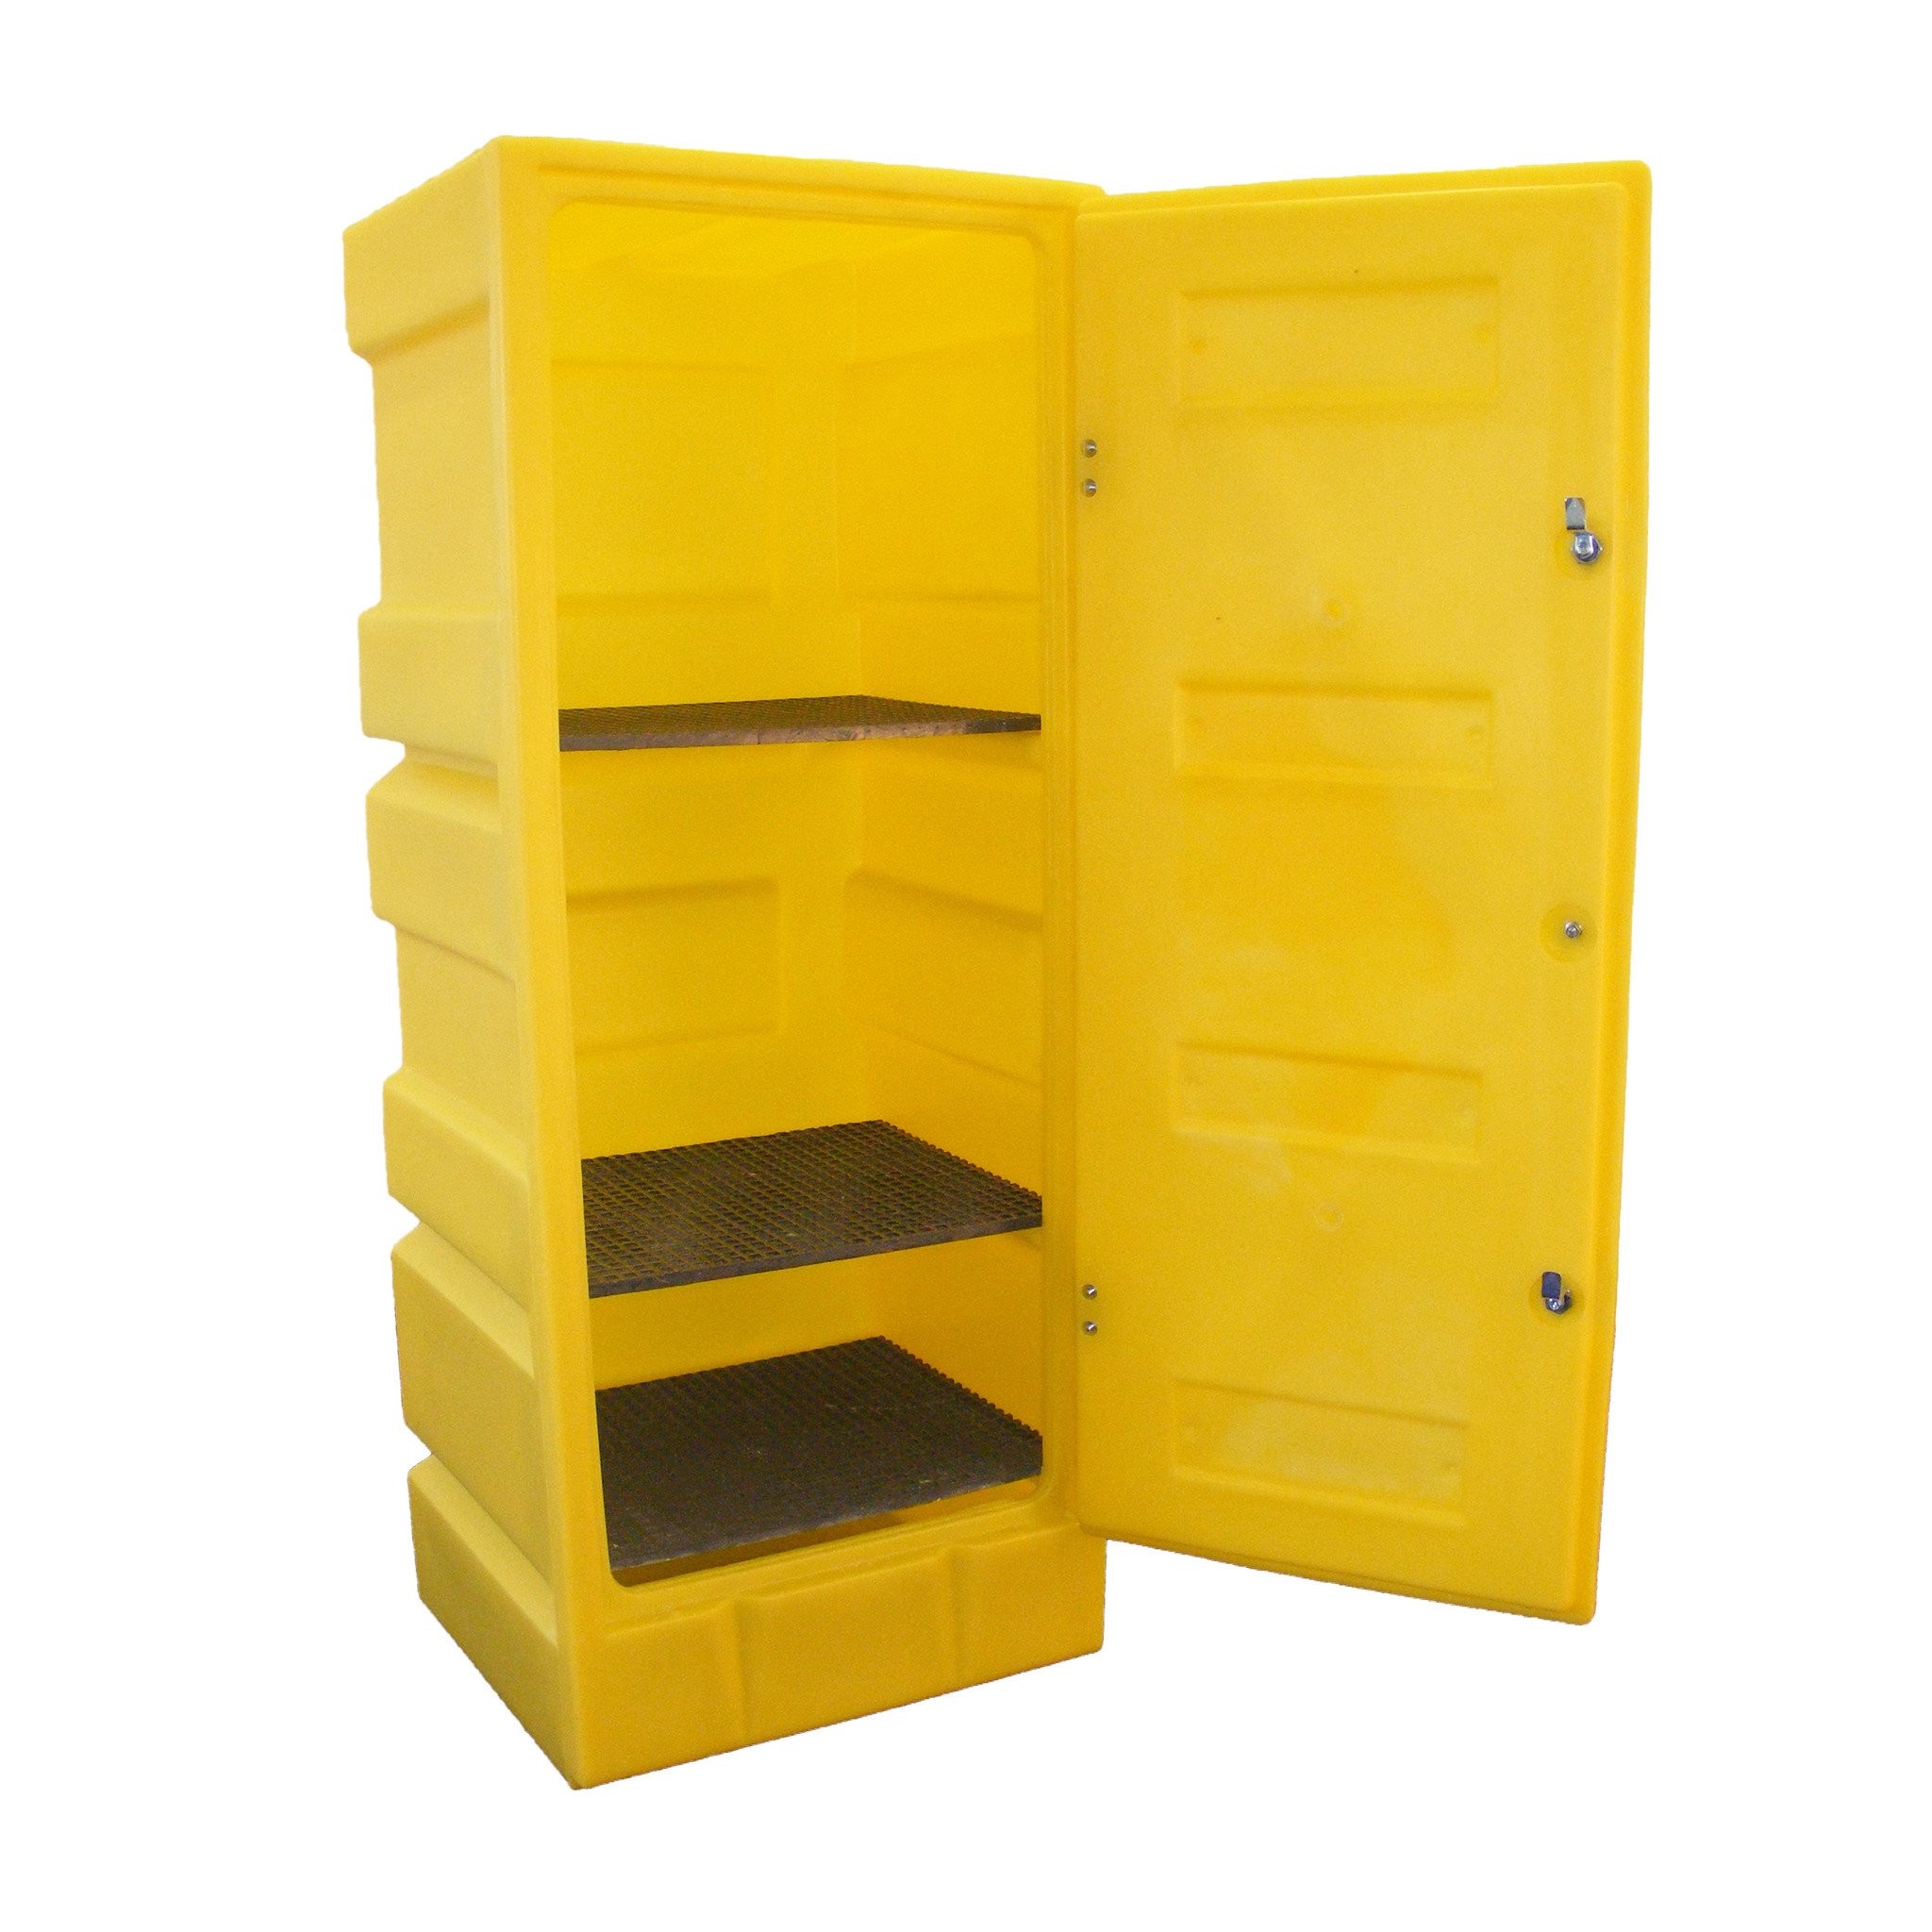 шкаф для хранения моющих средств и уборочного инвентаря